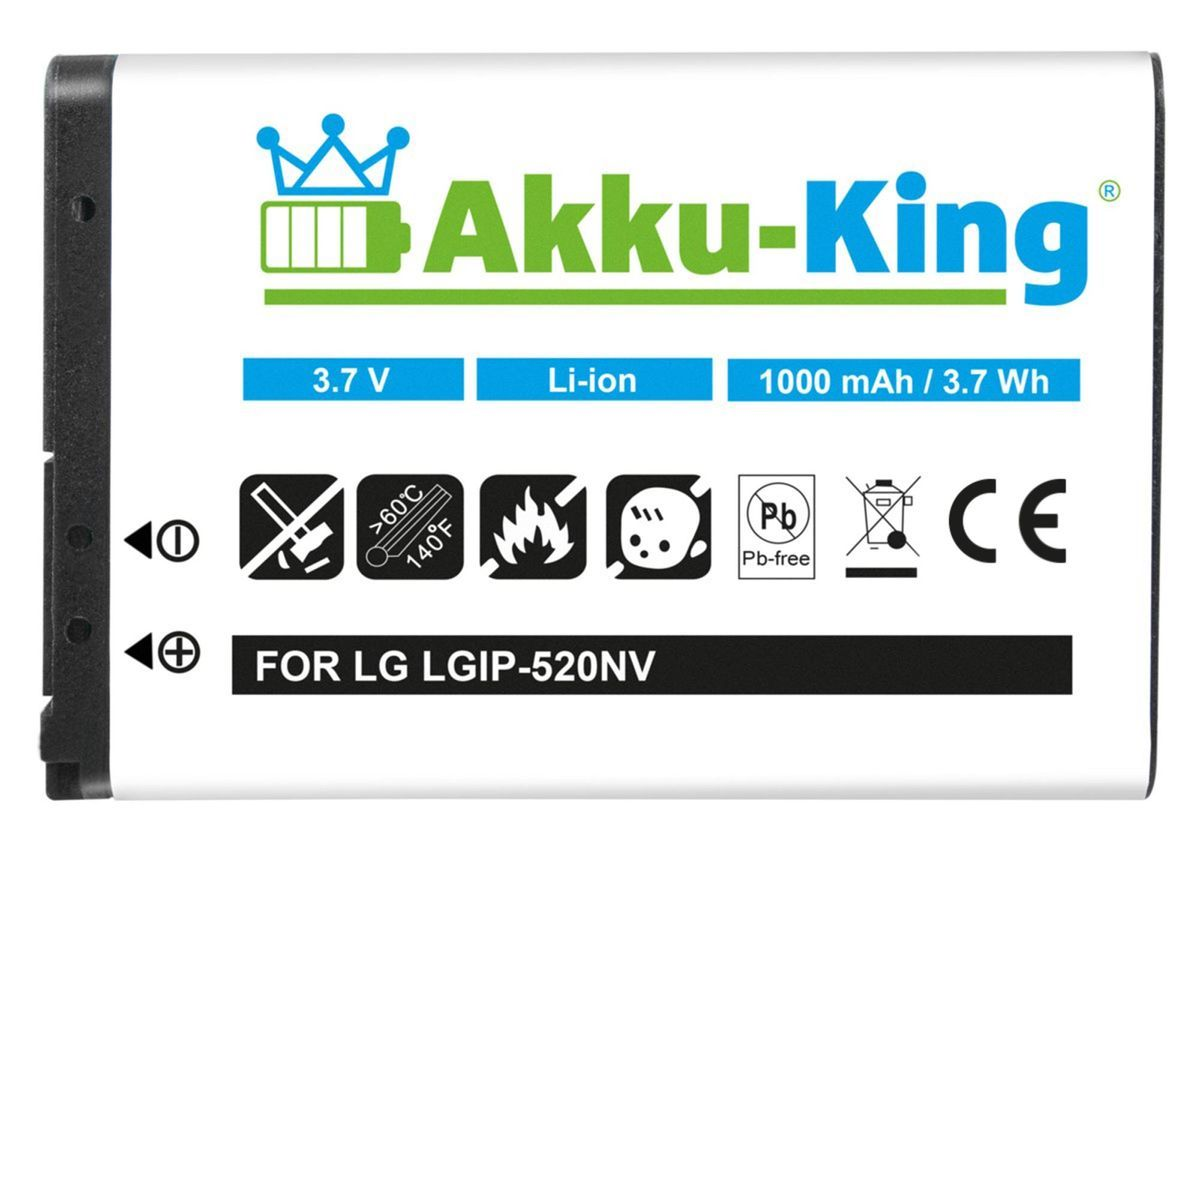 Handy-Akku, LG mit kompatibel Akku 3.7 1000mAh LGIP-520N AKKU-KING Li-Ion Volt,